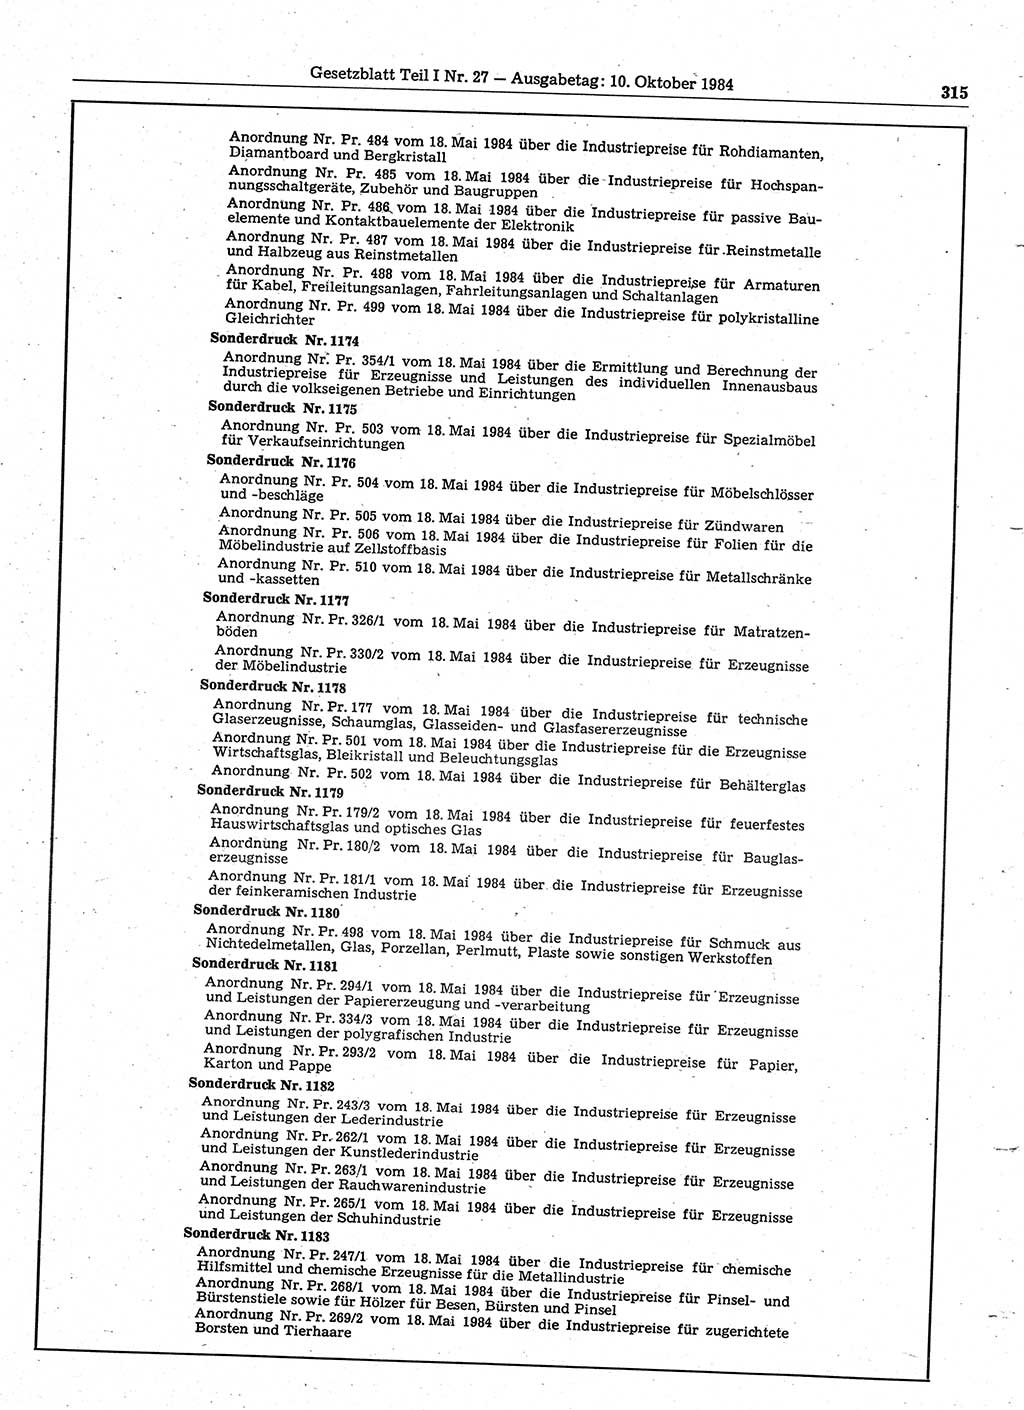 Gesetzblatt (GBl.) der Deutschen Demokratischen Republik (DDR) Teil Ⅰ 1984, Seite 315 (GBl. DDR Ⅰ 1984, S. 315)